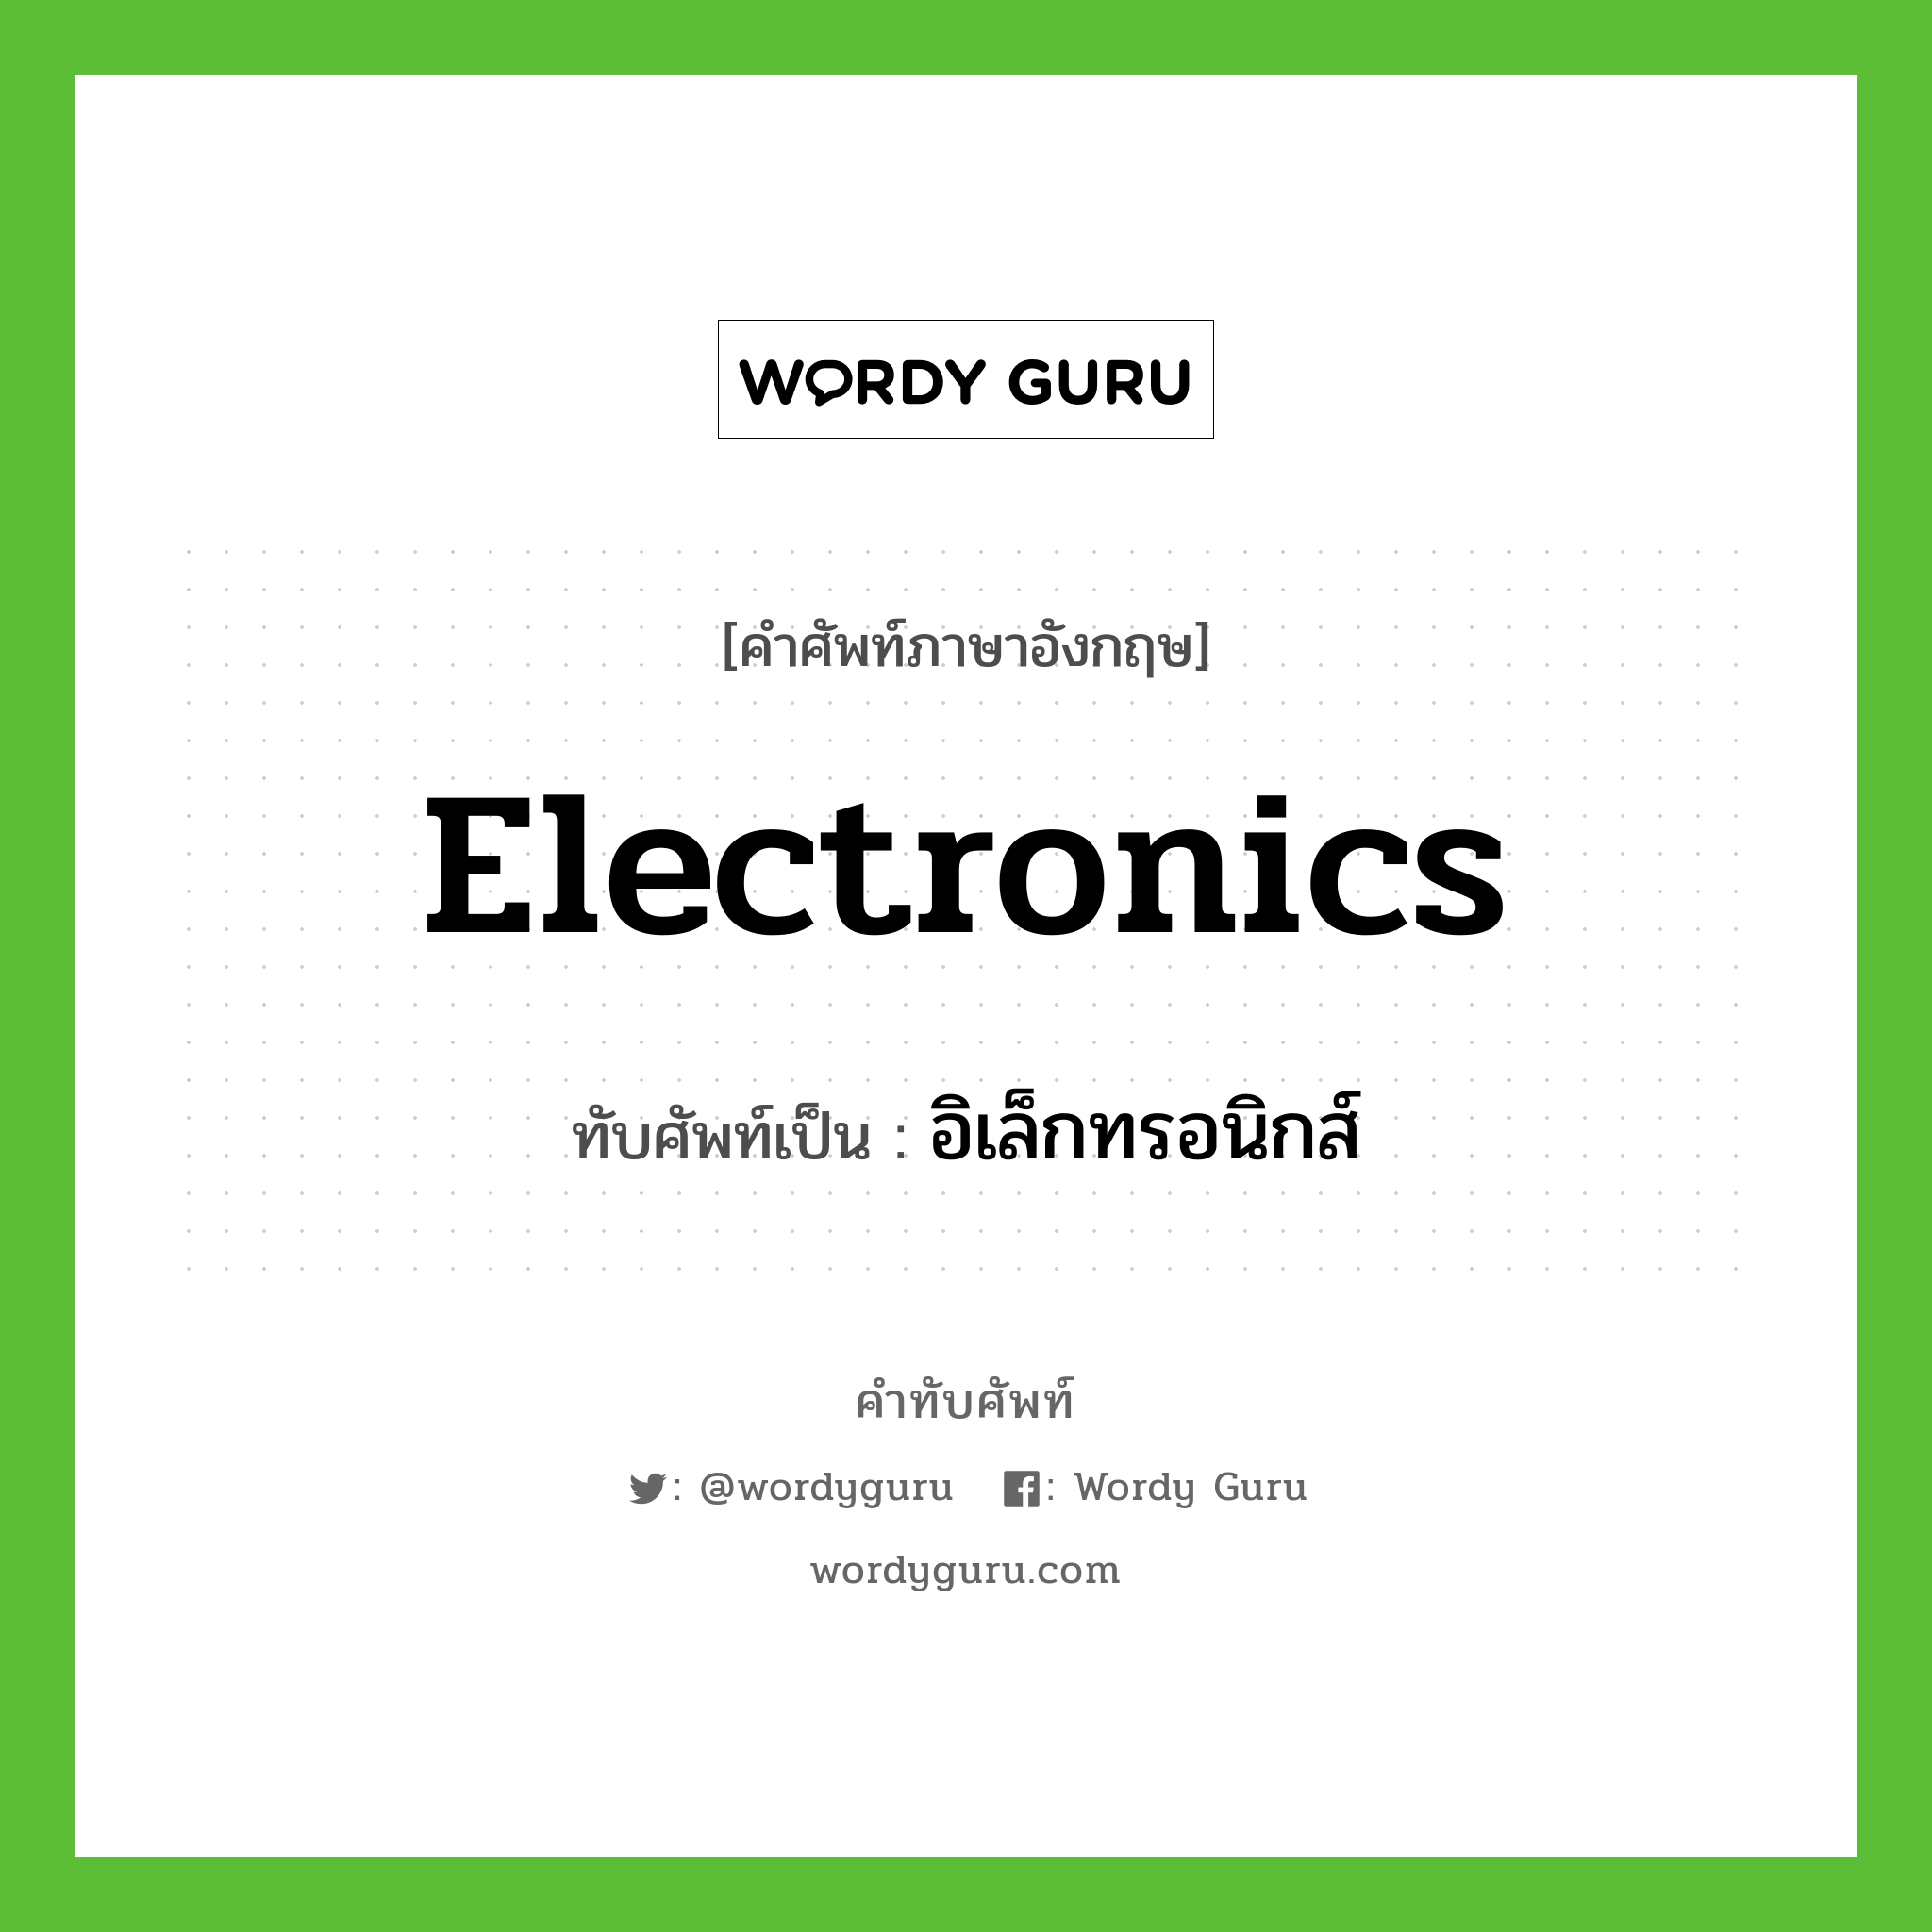 electronics เขียนเป็นคำไทยว่าอะไร?, คำศัพท์ภาษาอังกฤษ electronics ทับศัพท์เป็น อิเล็กทรอนิกส์